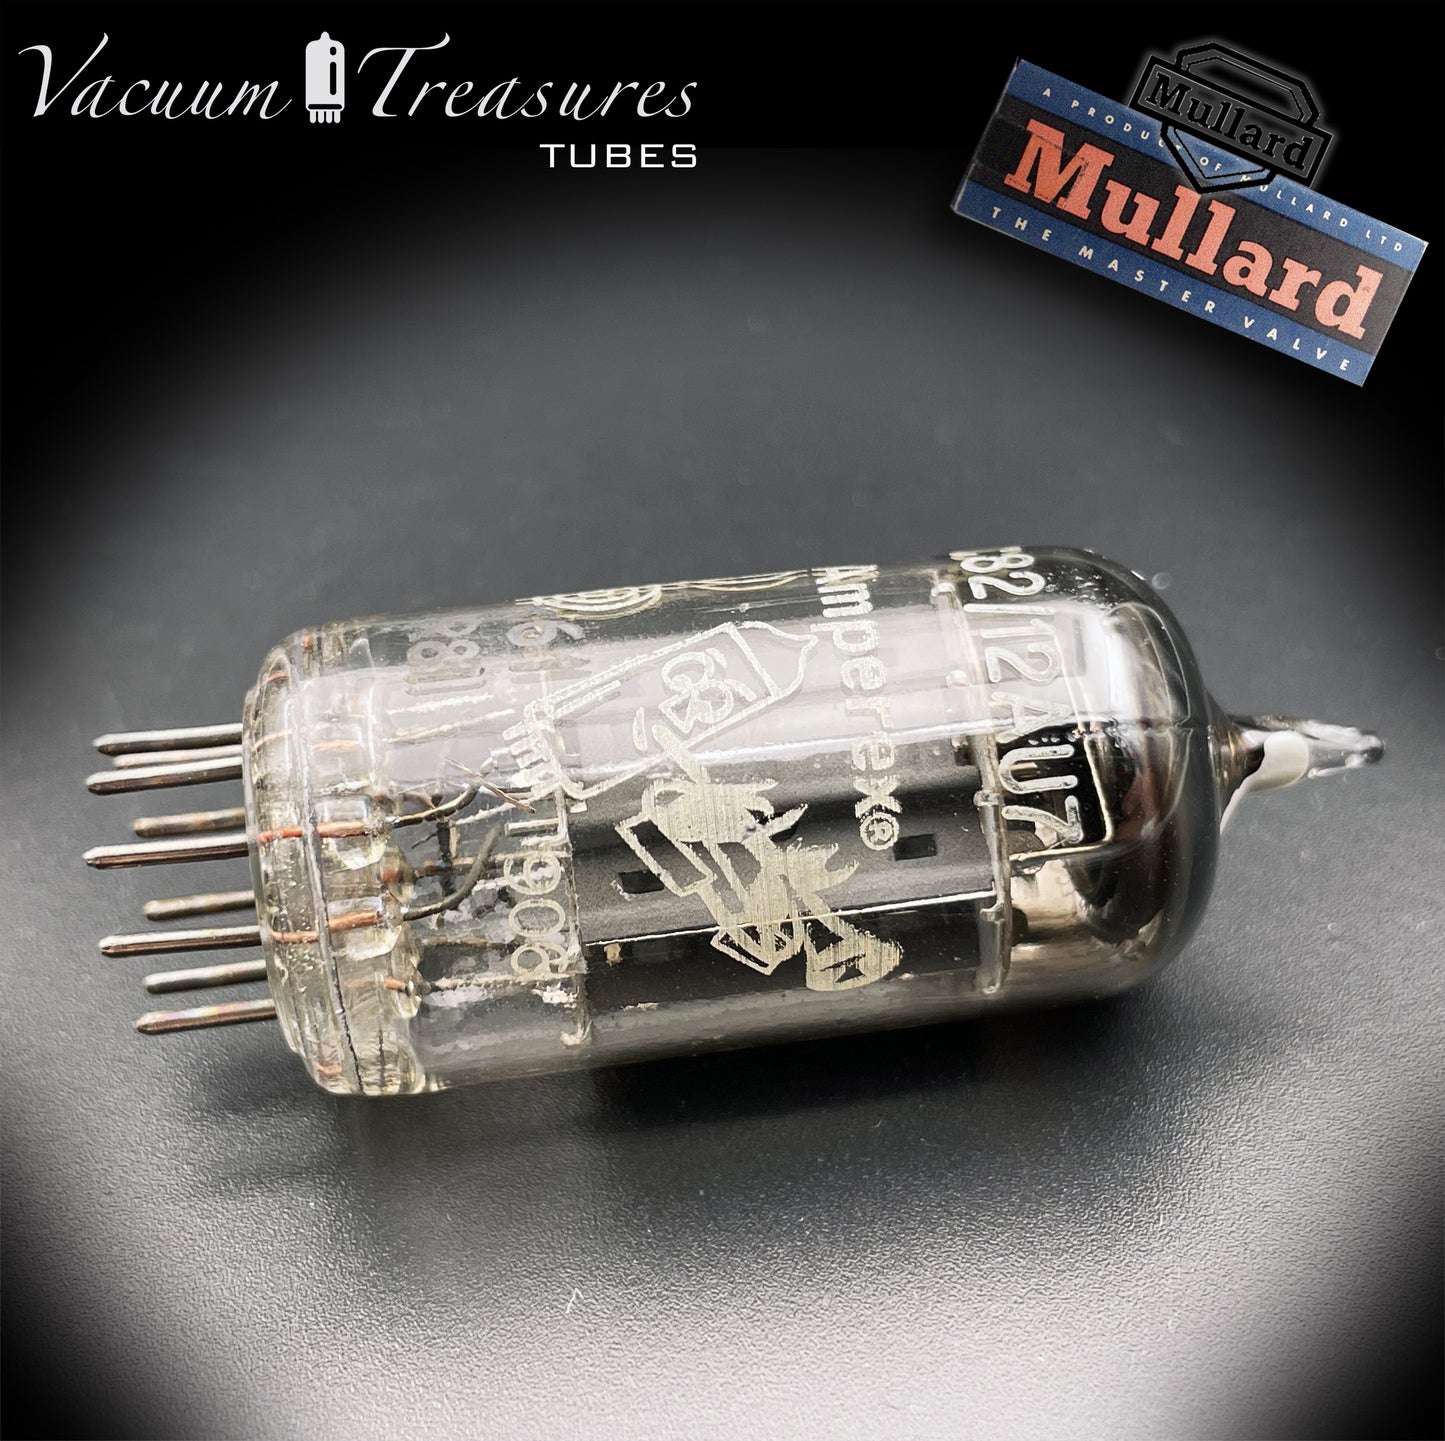 ECC82 ( 12AU7 ) CV491 NOS MULLARD pour Amperex Bugle Boy Tube de valve testé à plaque longue K61 R8J GT. GRANDE-BRETAGNE '58